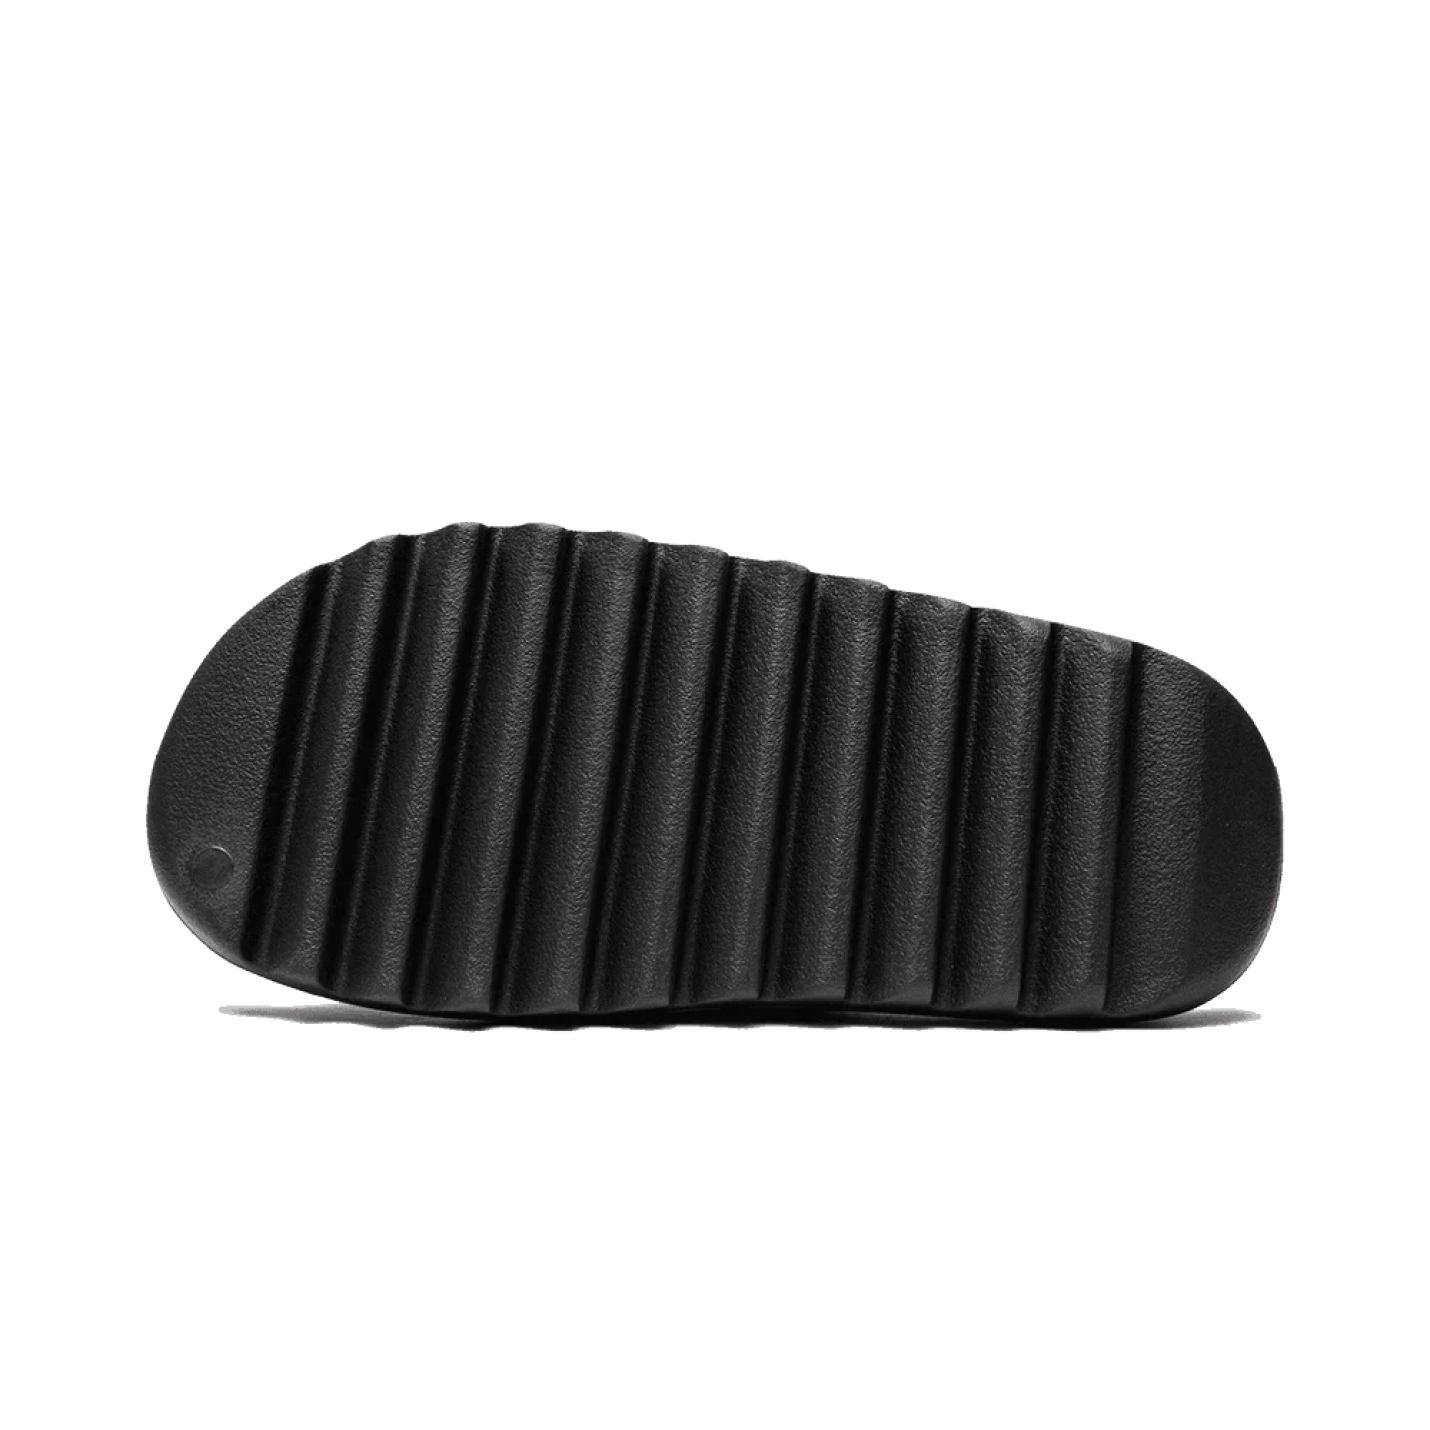 Yeezy Slide Onyx - Sneaker Totaal